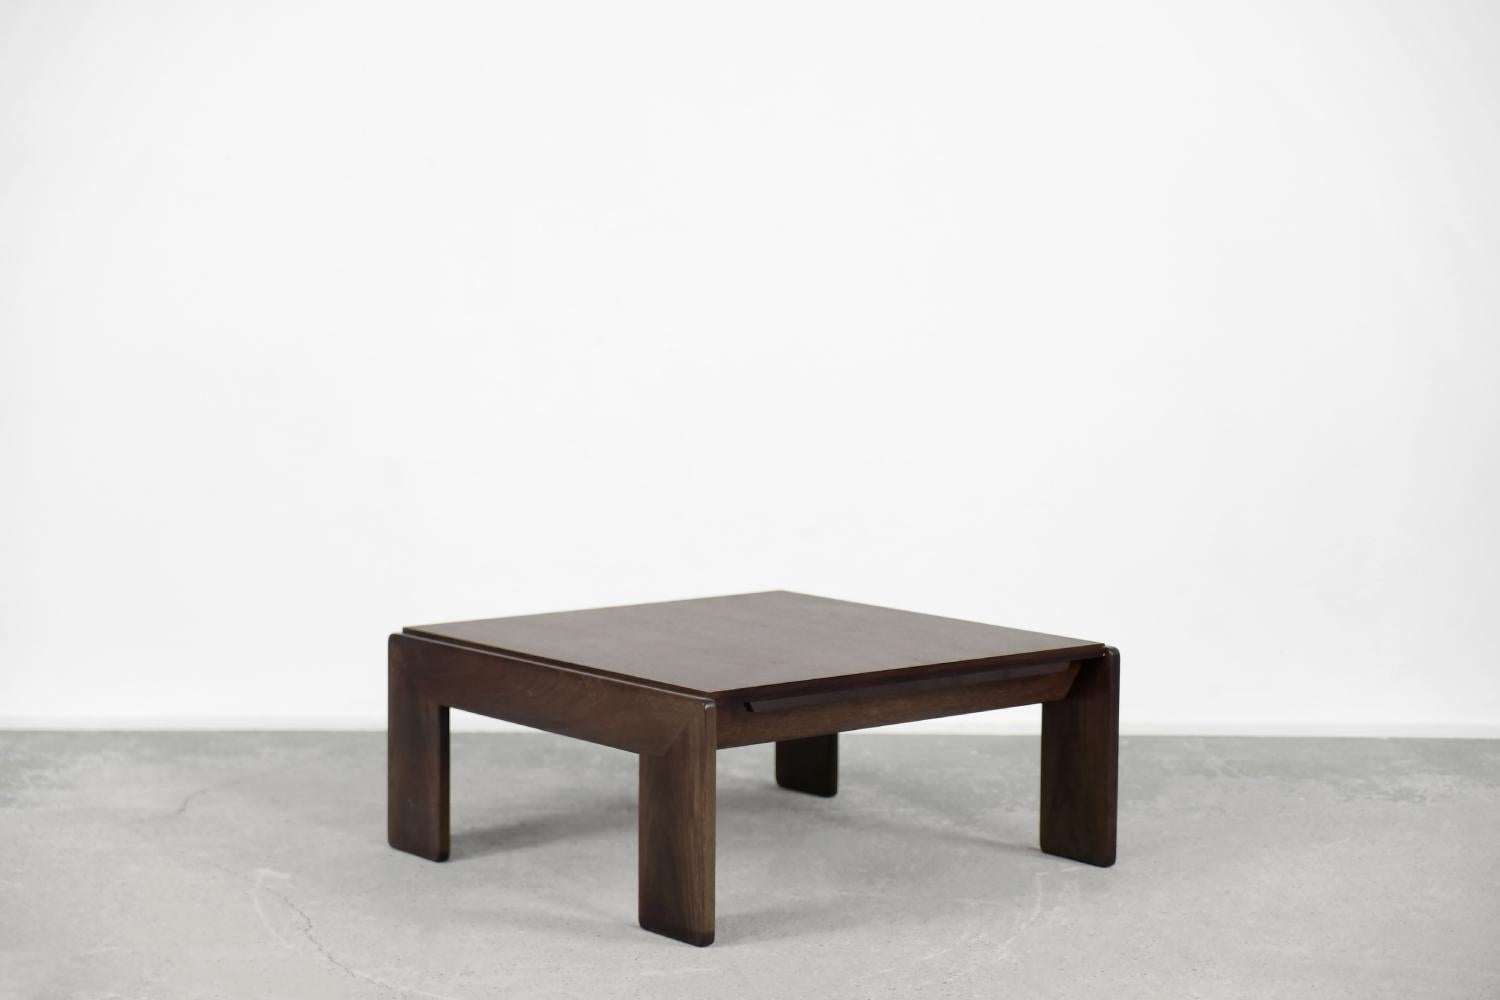 Cette table basse a été conçue par le duo d'architectes Tobia et Afra Scarpa en 1962 et fabriquée par la manufacture italienne Gavina. Il s'agit d'une table de production précoce de la série Bastiano. Il est fabriqué en bois de teck et sa finition